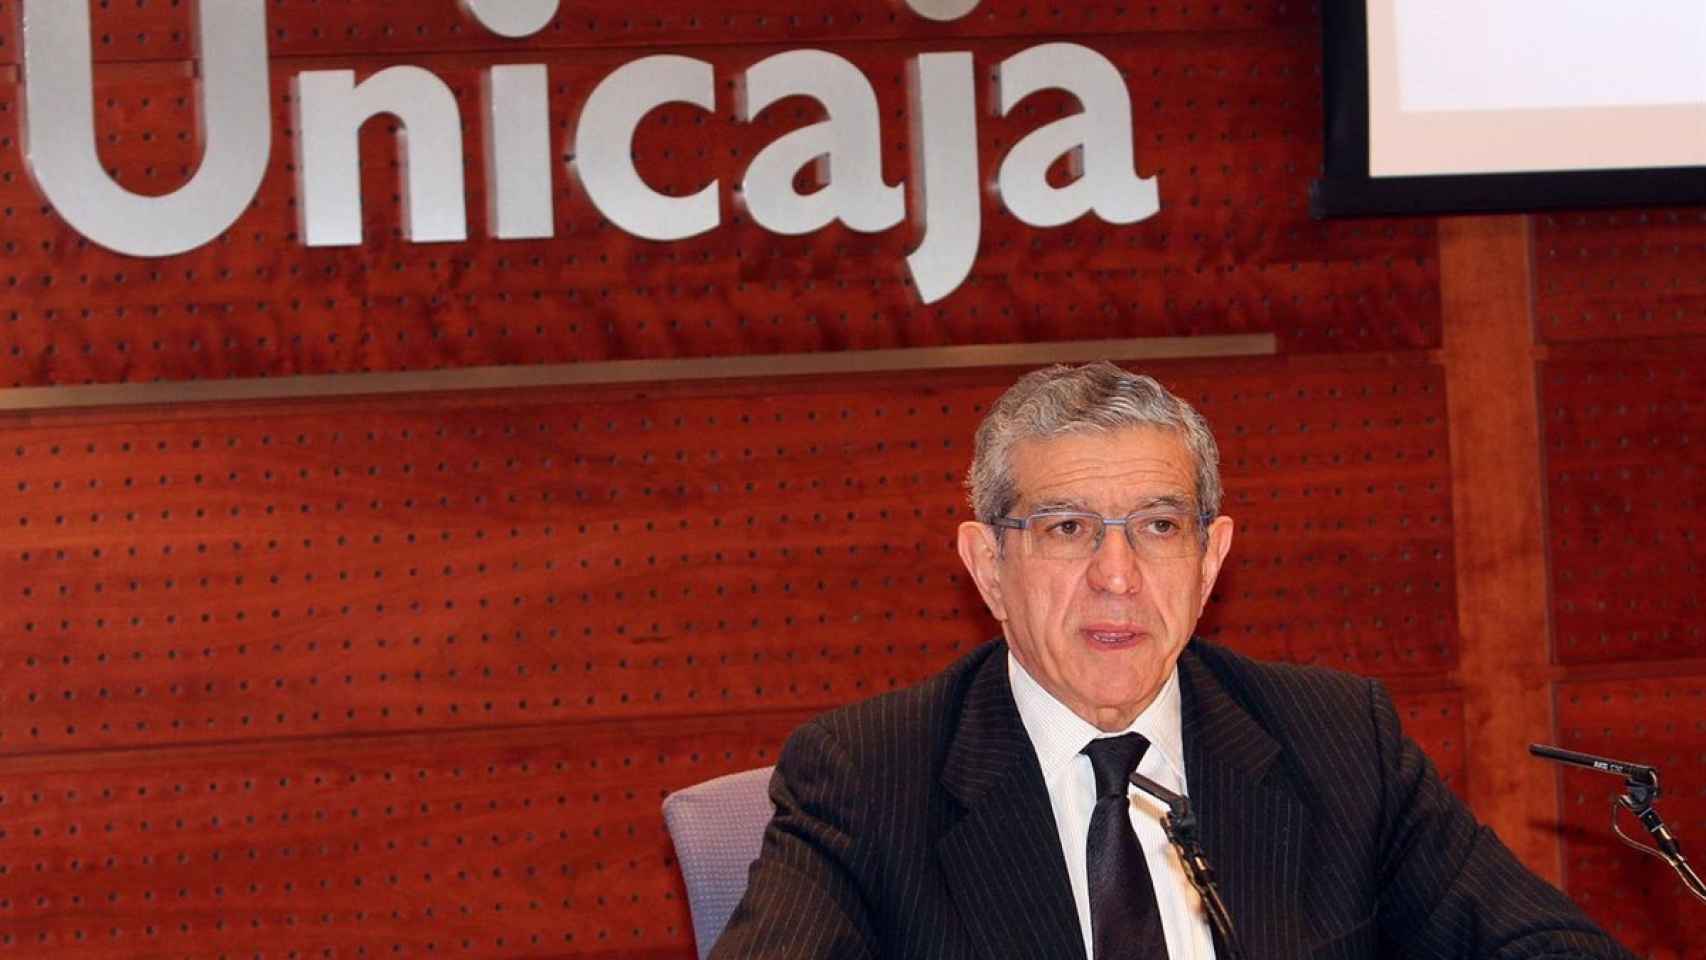 El expresidente de la Fundación Unicaja, Braulio Medel, en una imagen.